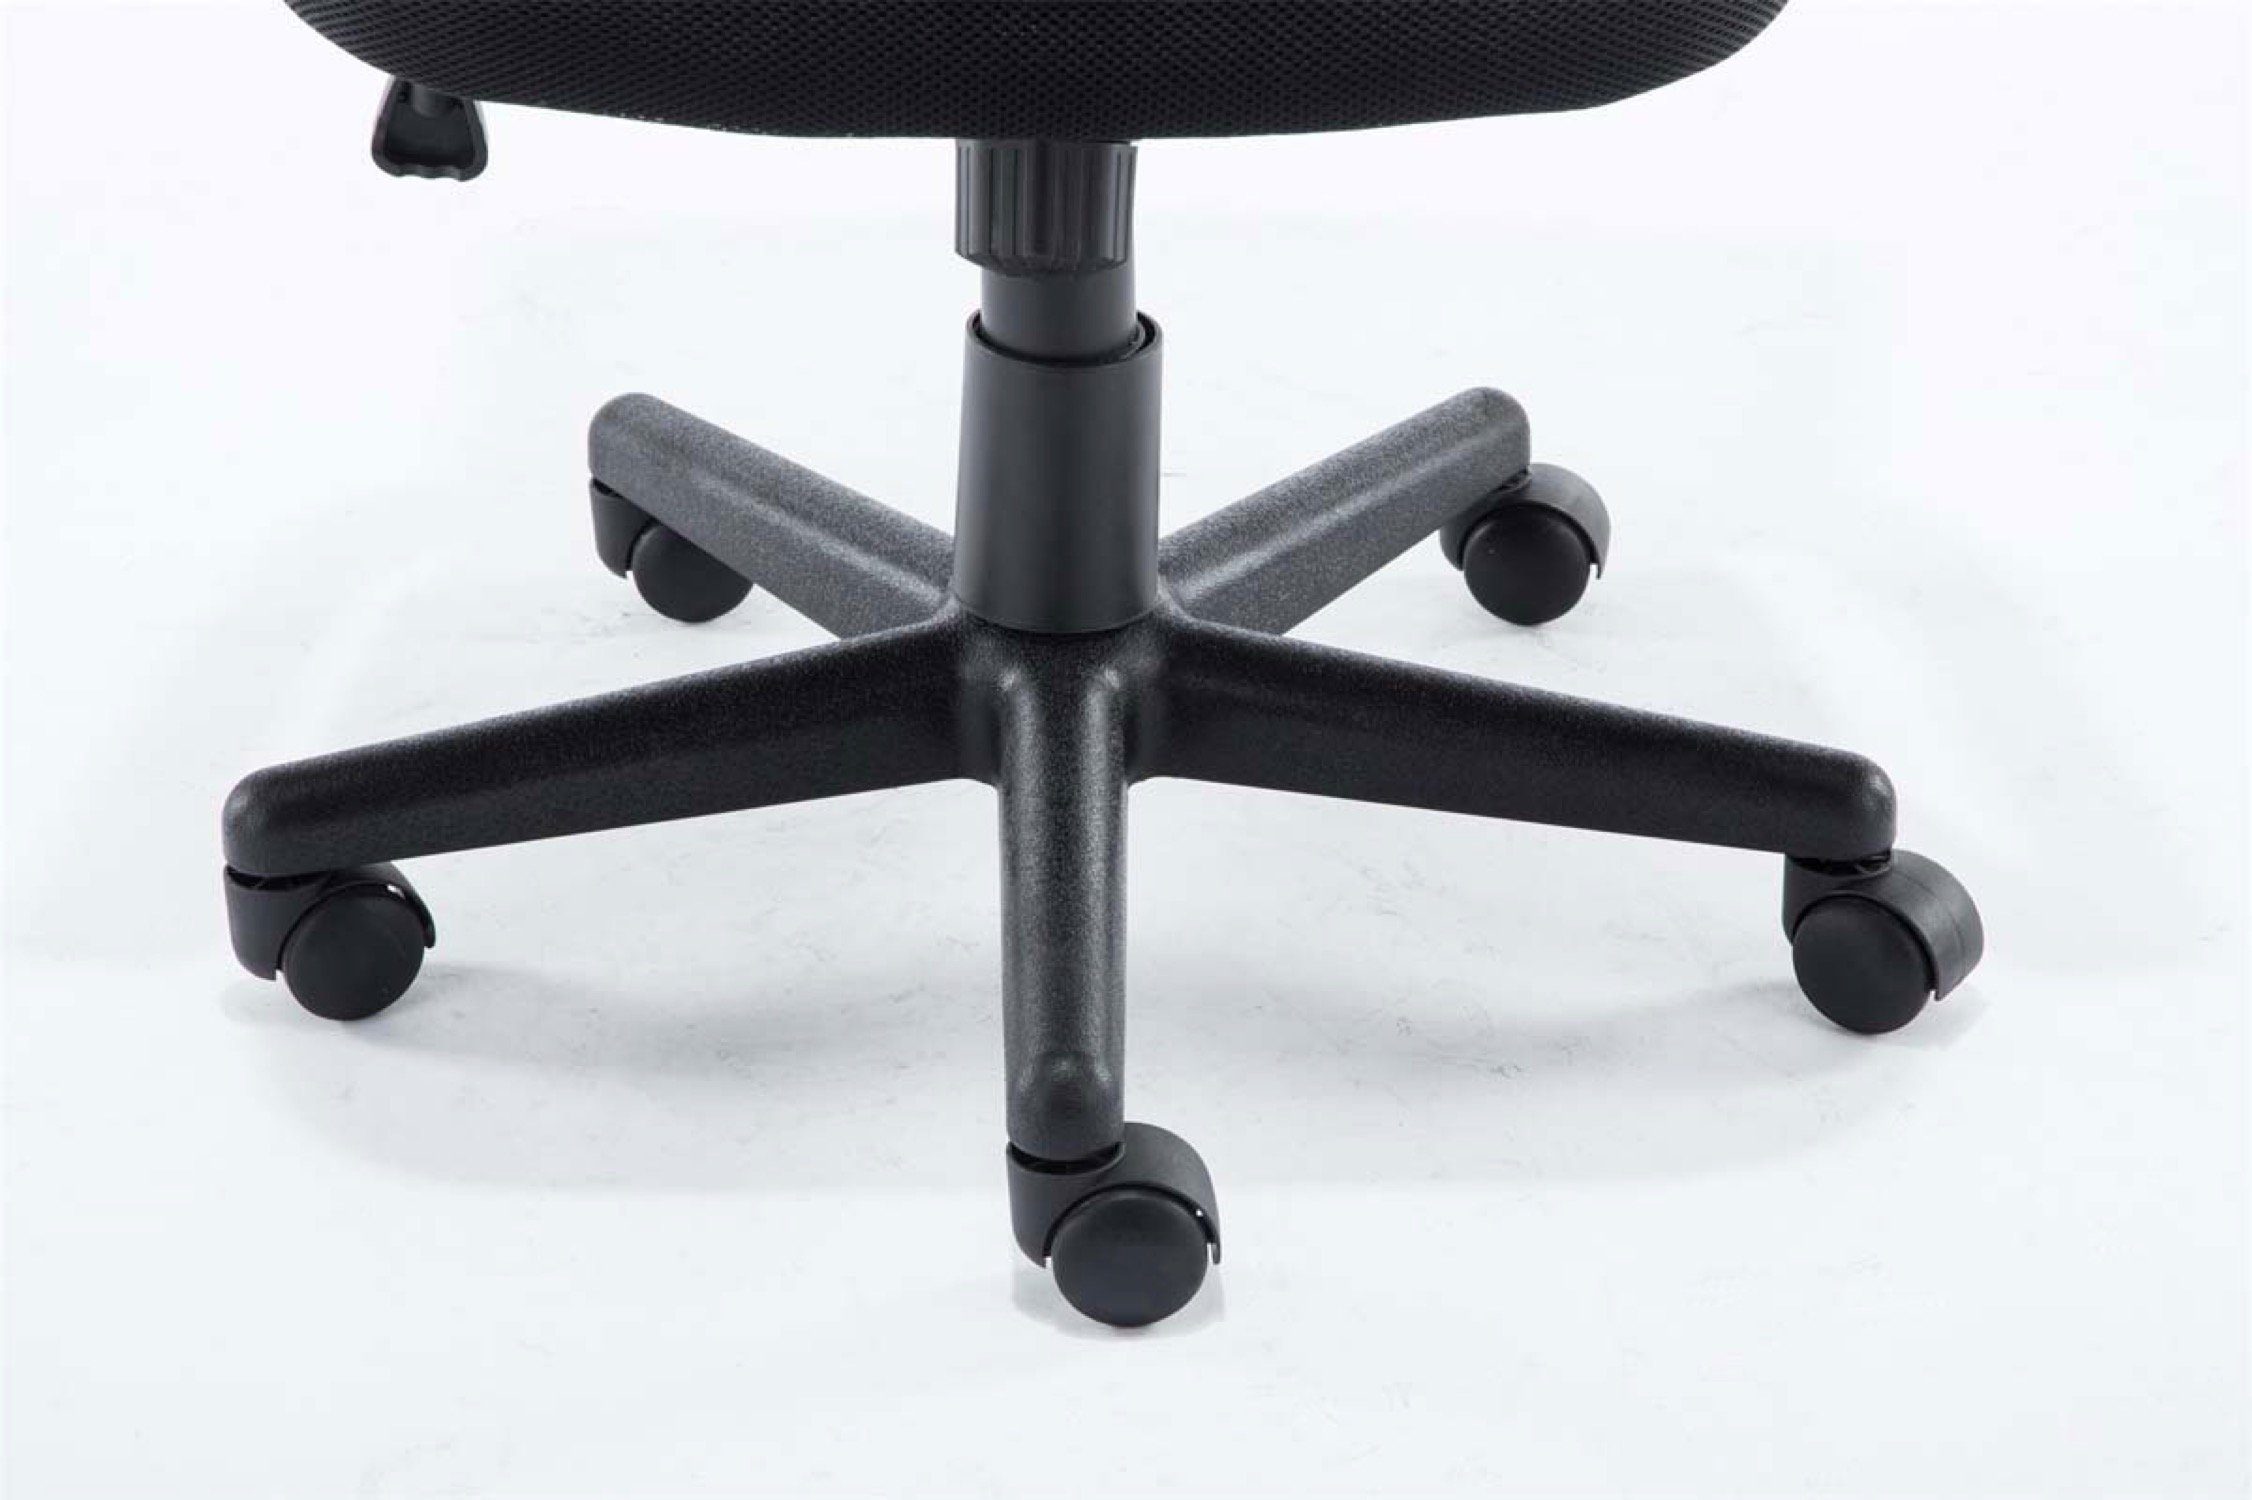 TPFLiving Bürostuhl Genf mit - orange Sitzfläche: Gestell: Microfaser Chefsessel, (Schreibtischstuhl, - XXL), Bürostuhl höhenverstellbar drehbar bequemer Rückenlehne 360° schwarz und Drehstuhl, Kunststoff